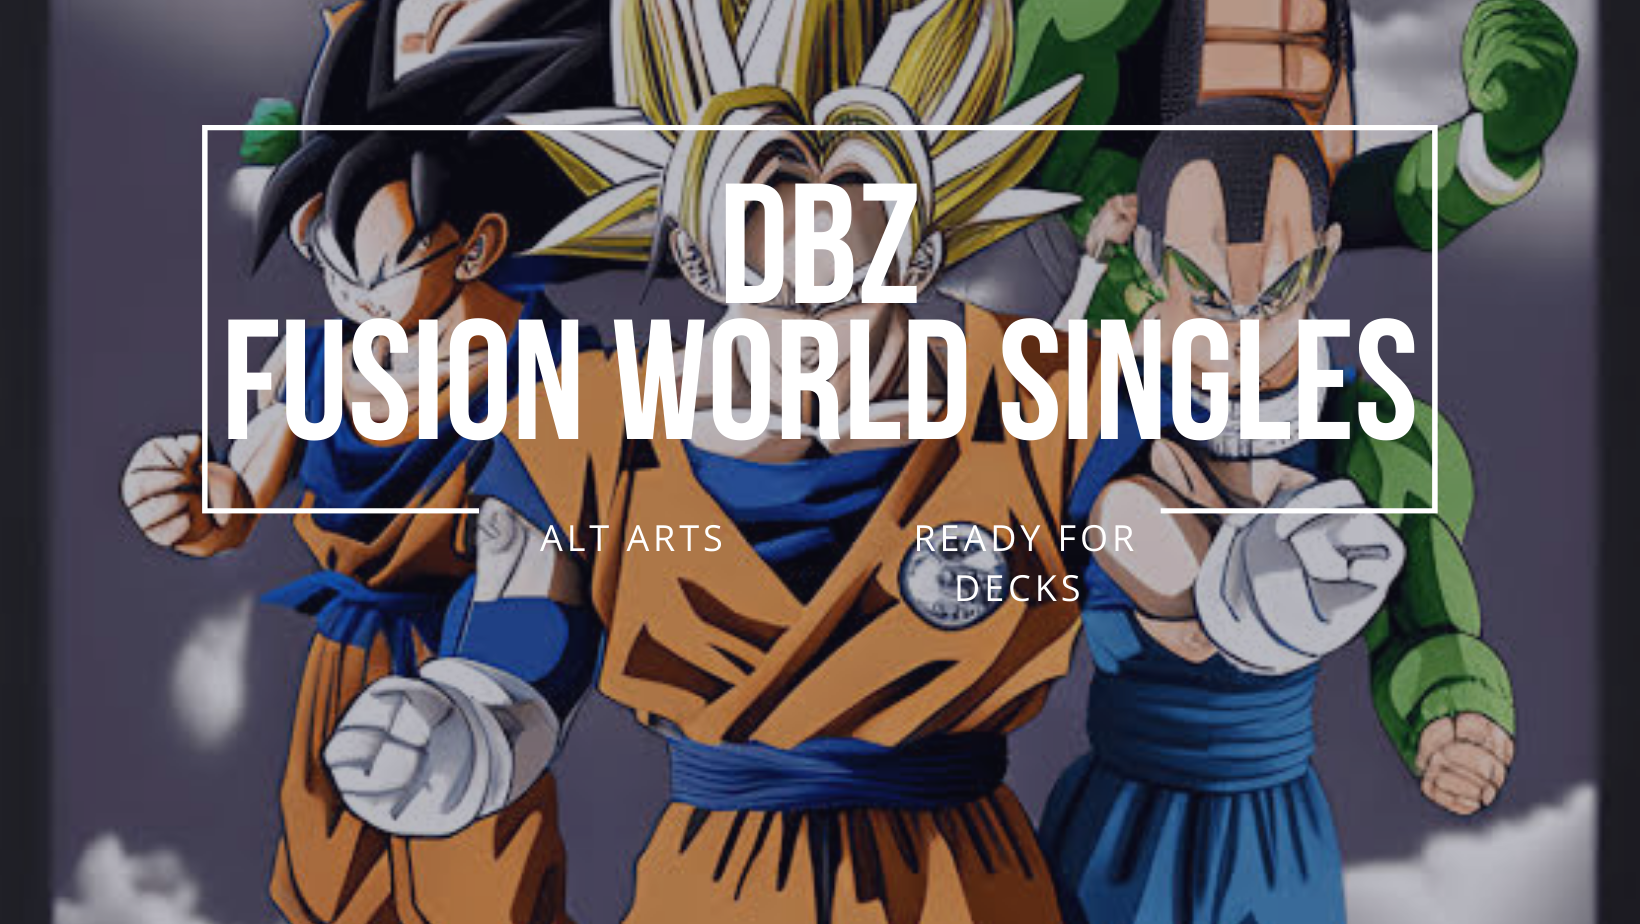 Dragon Ball Super: Fusion World Singles